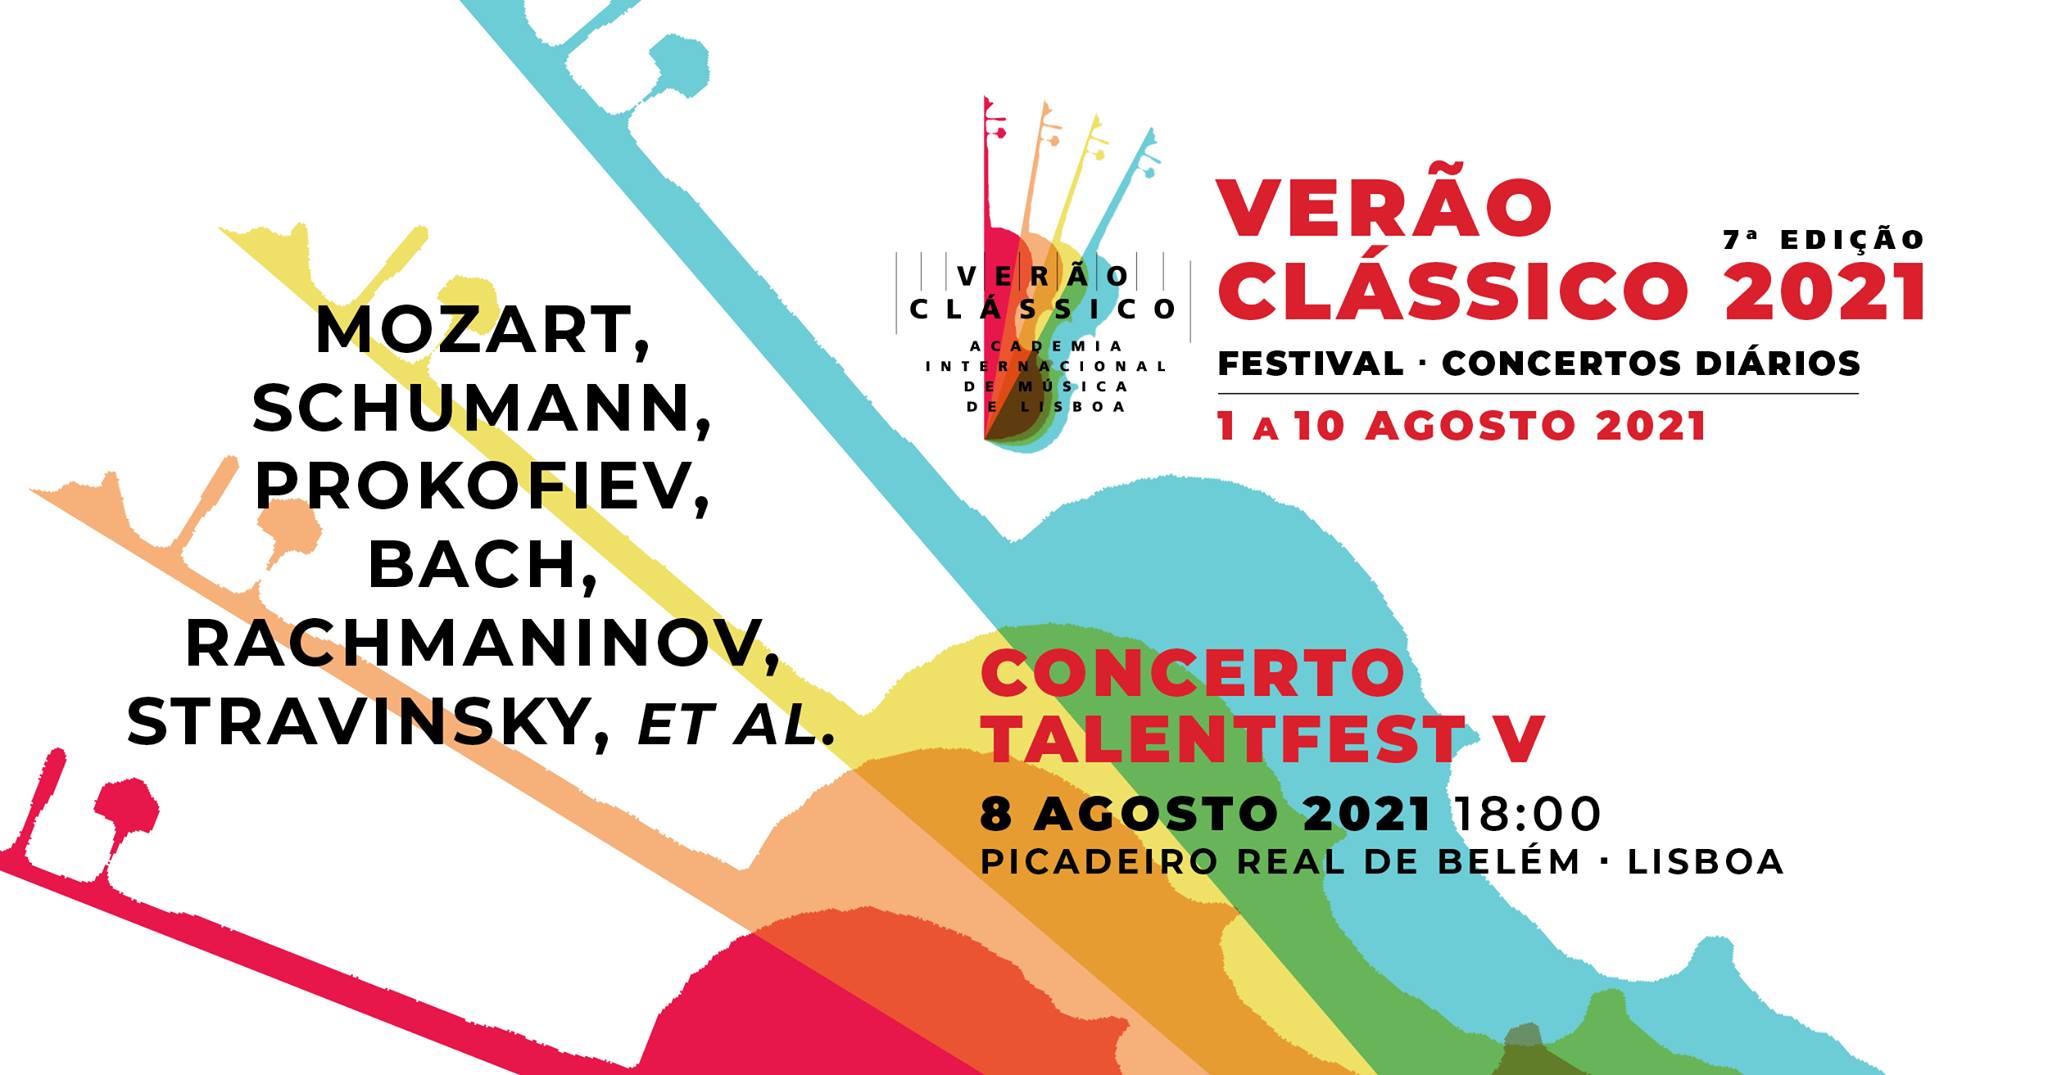 Concerto TalentFest V - VERÃO CLÁSSICO 2021